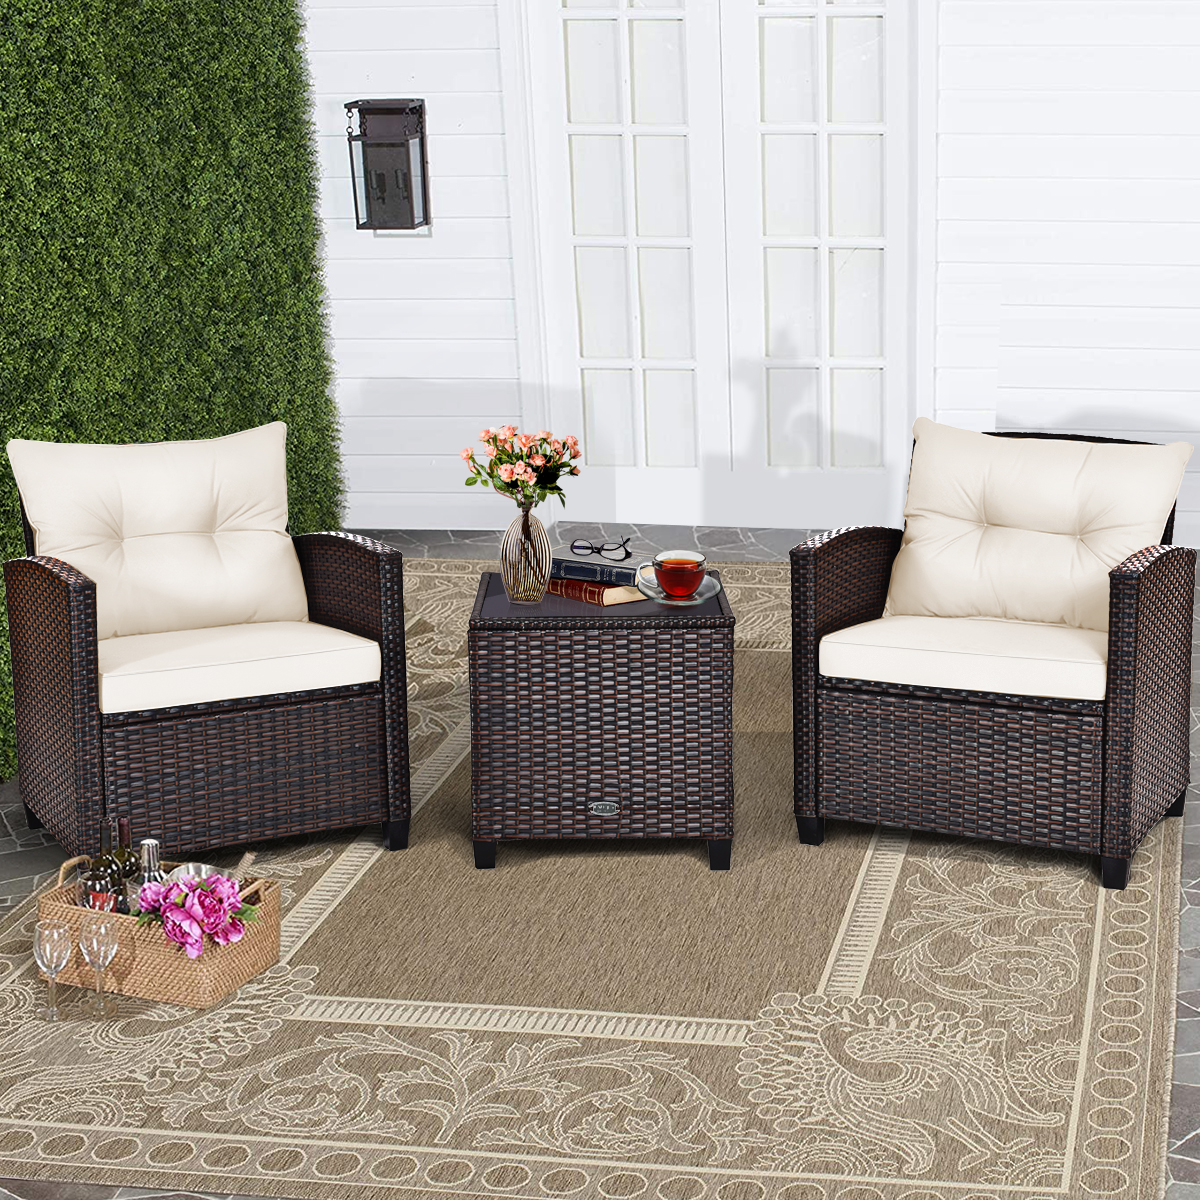 3-TLG. Polyrattan Lounge Set Gartenmöbel Rattan Sitzgruppe mit Sitzkissen & Couchtisch Beige von Costway